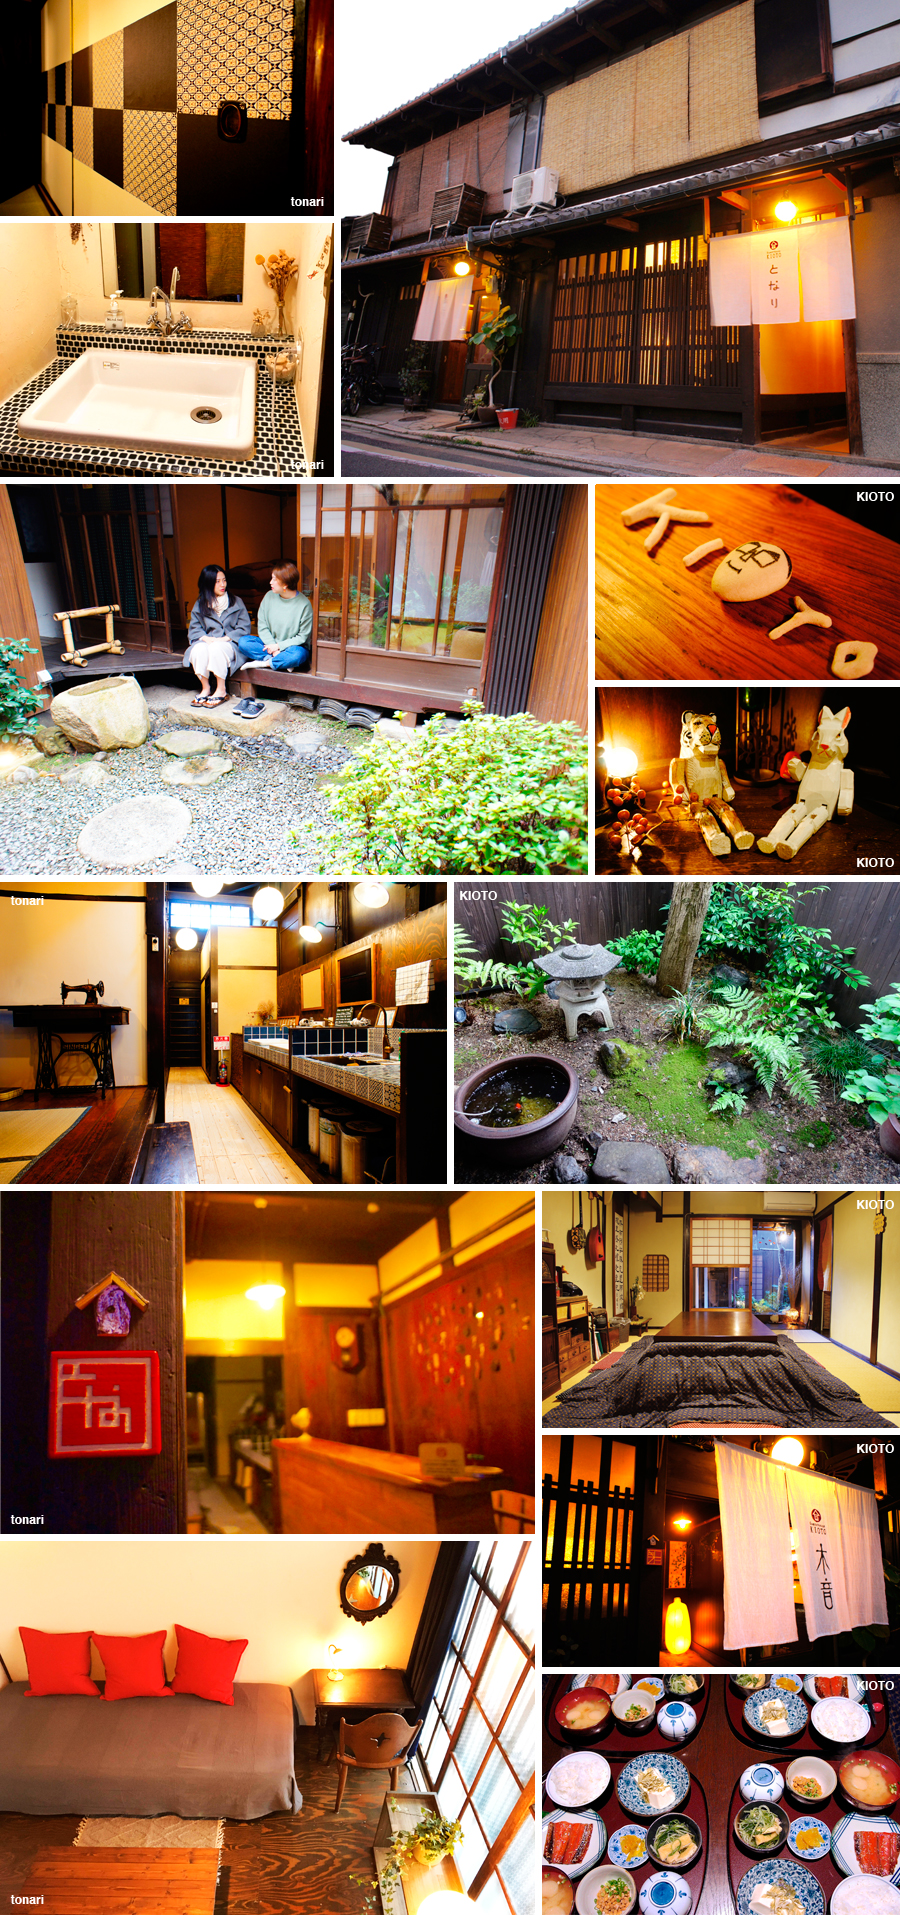 京都ゲストハウス木音の外観・お部屋・お庭などの写真です。